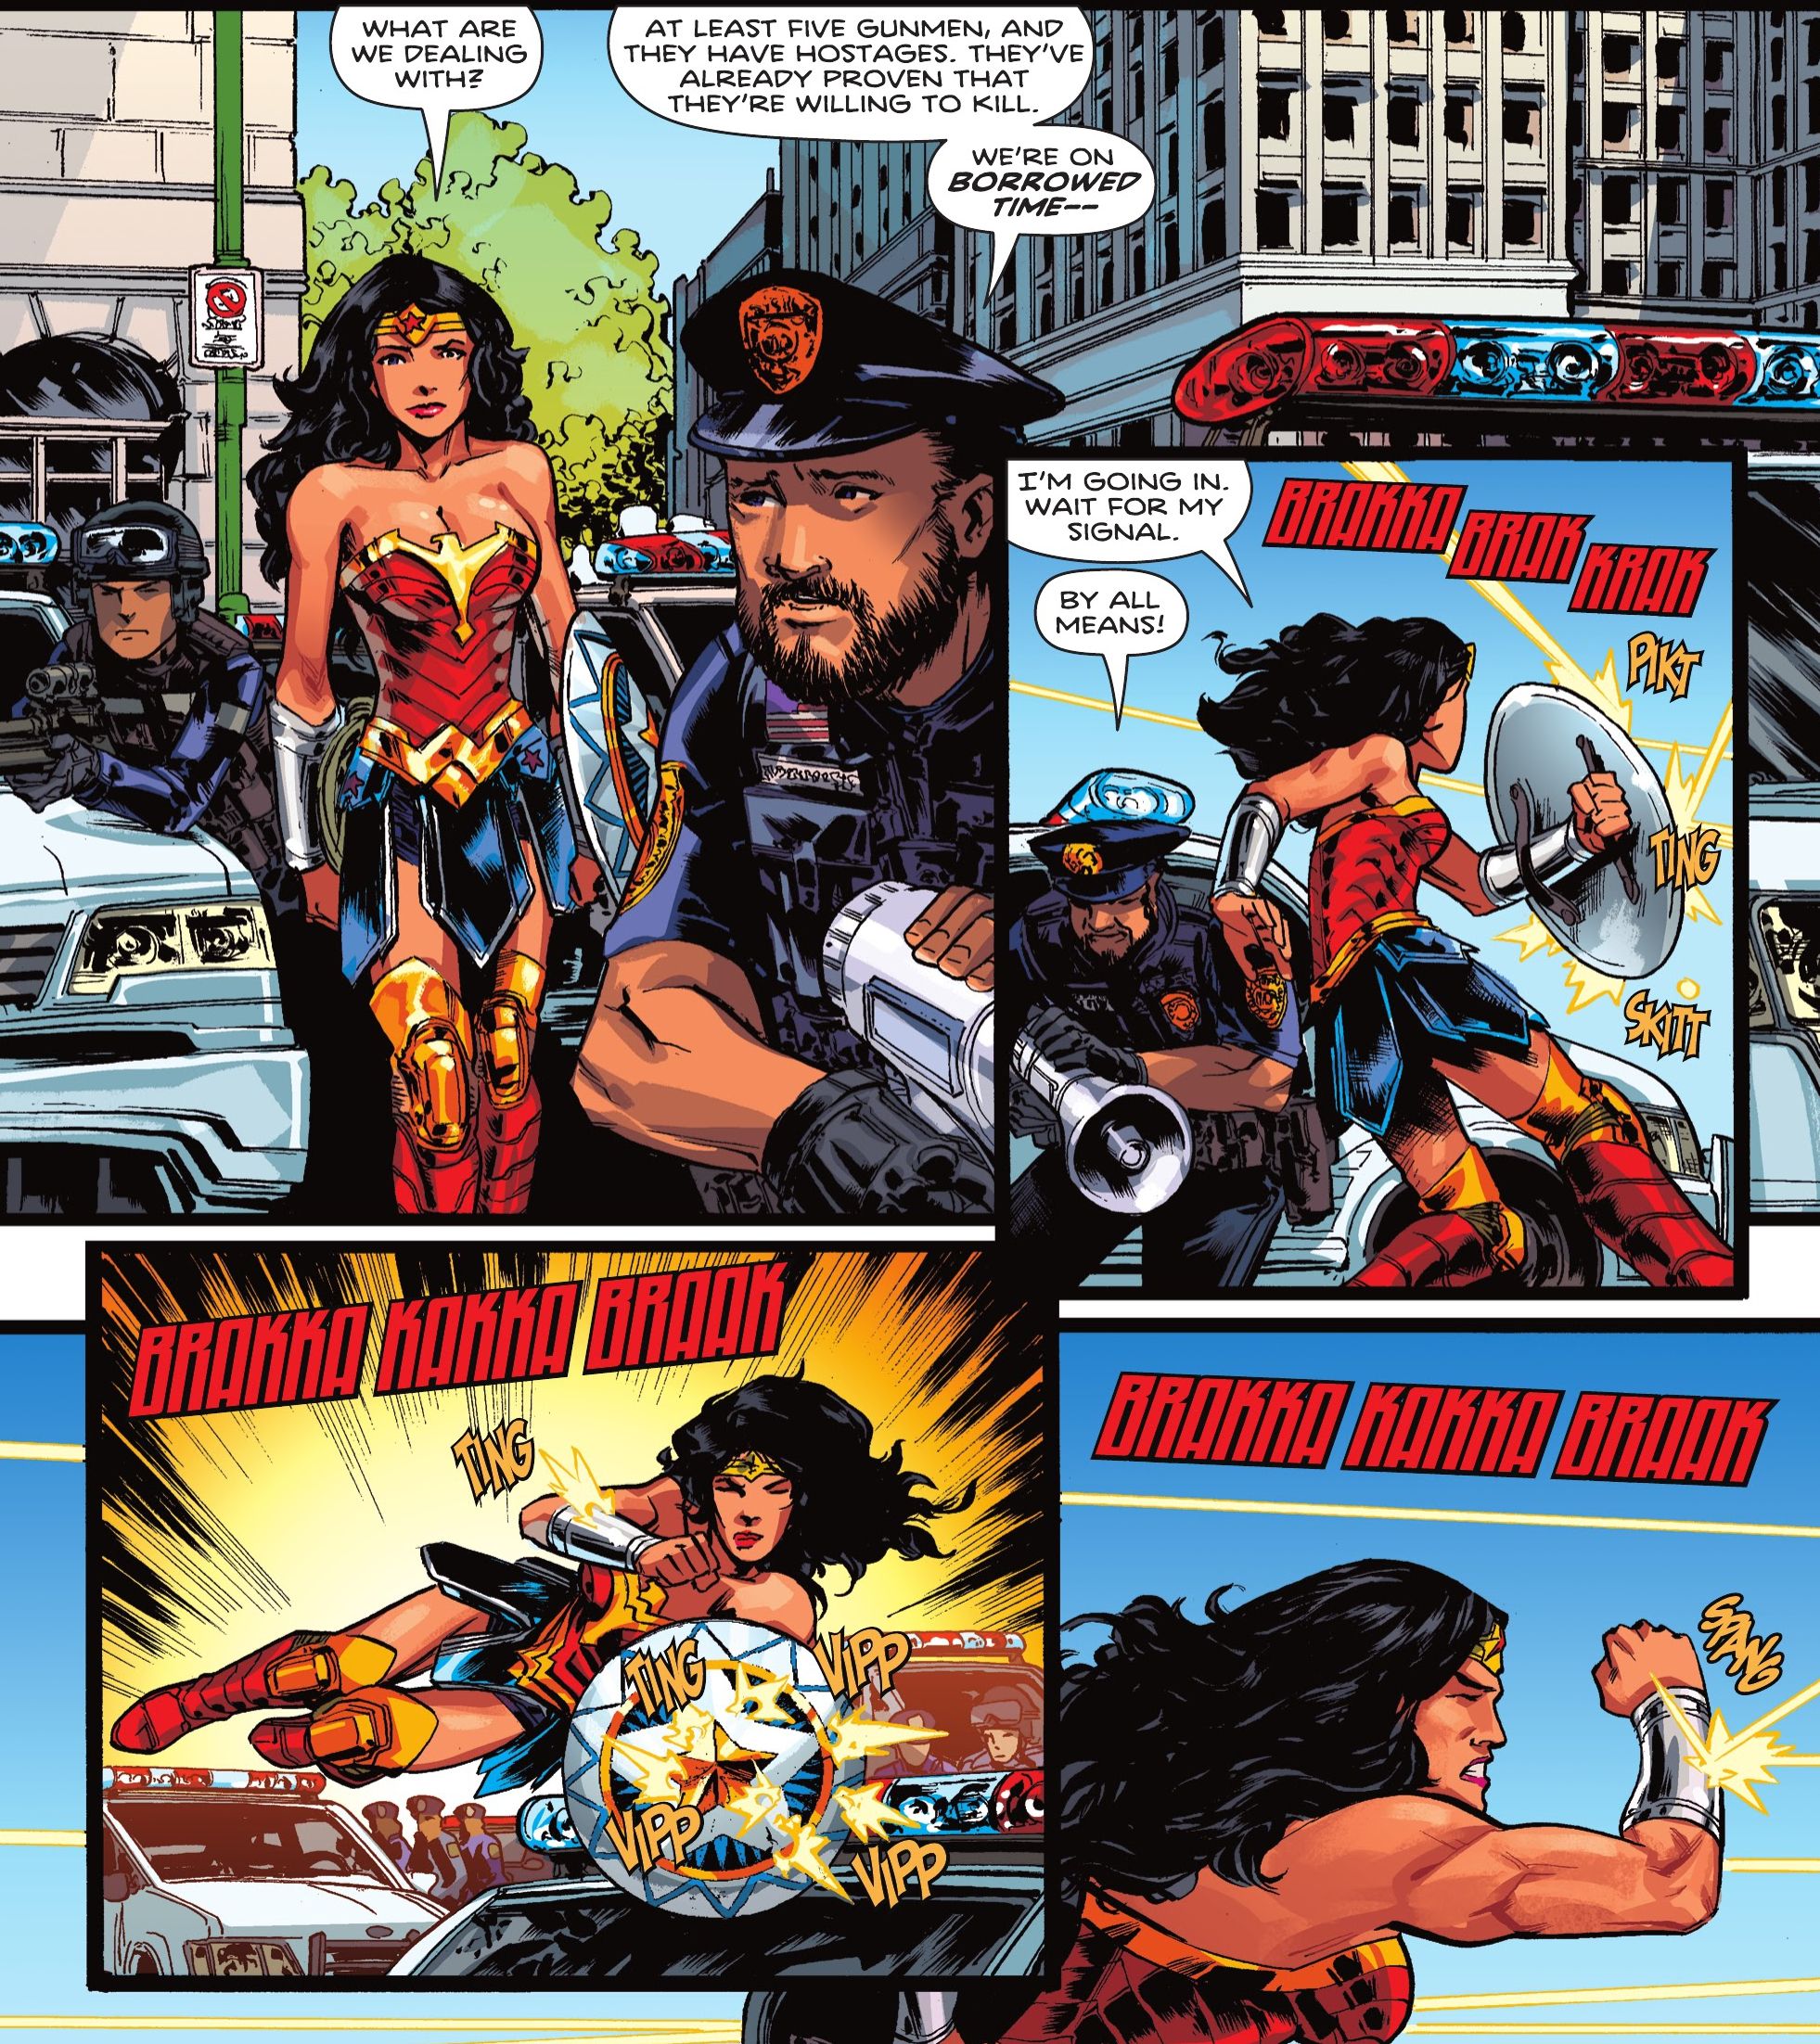 Wonder Woman dodges bullets